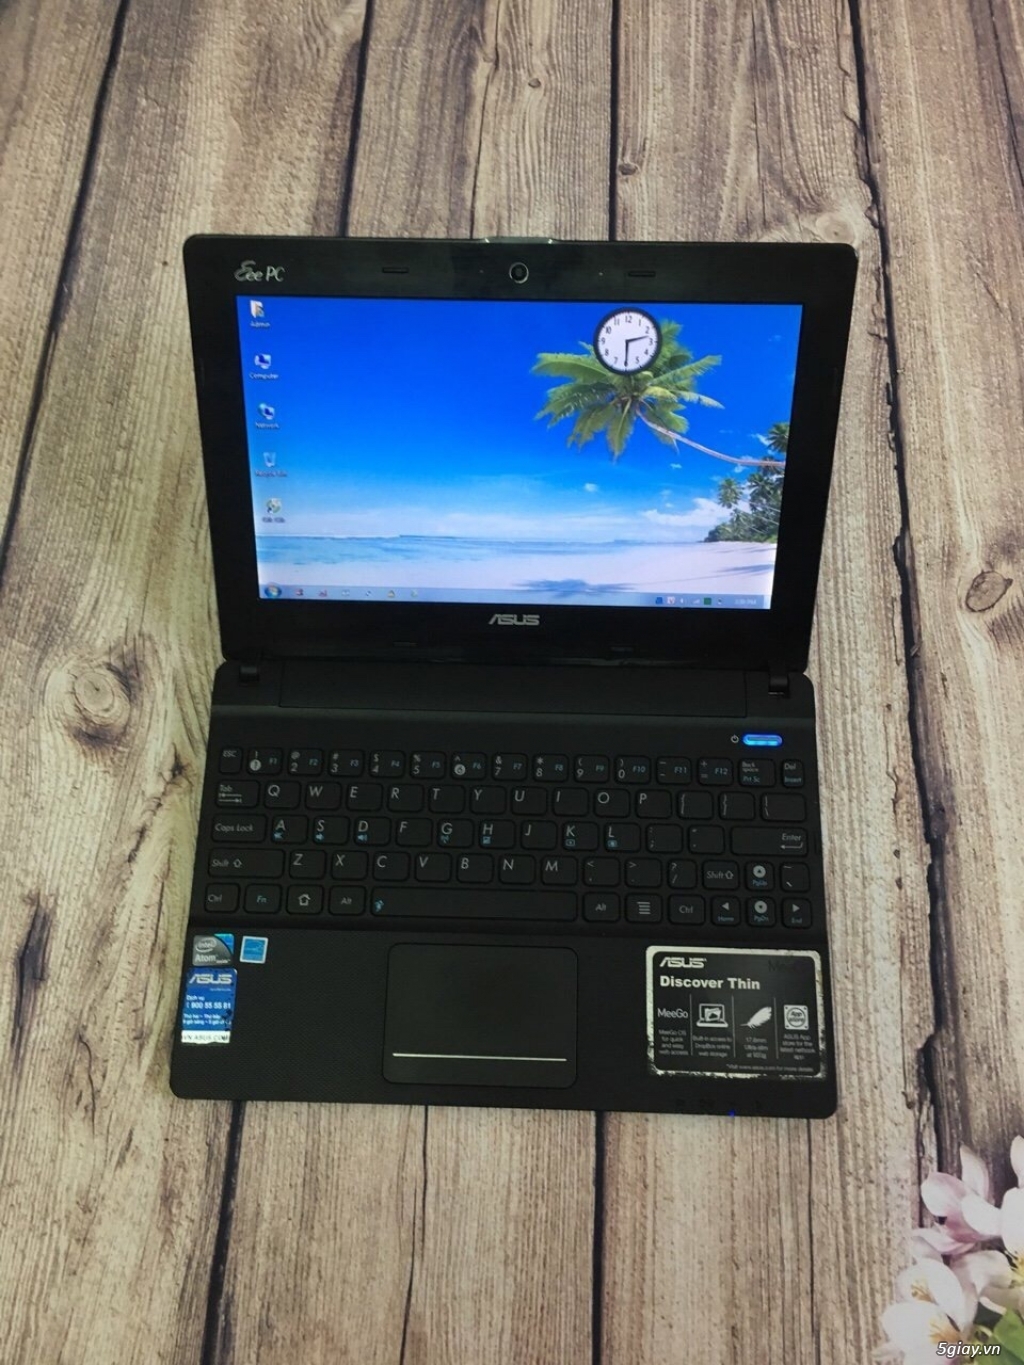 Laptop cũ Asus X101 cấu hình Atom N435 ram 2GB ổ cứng 64GB giá ưu đãi